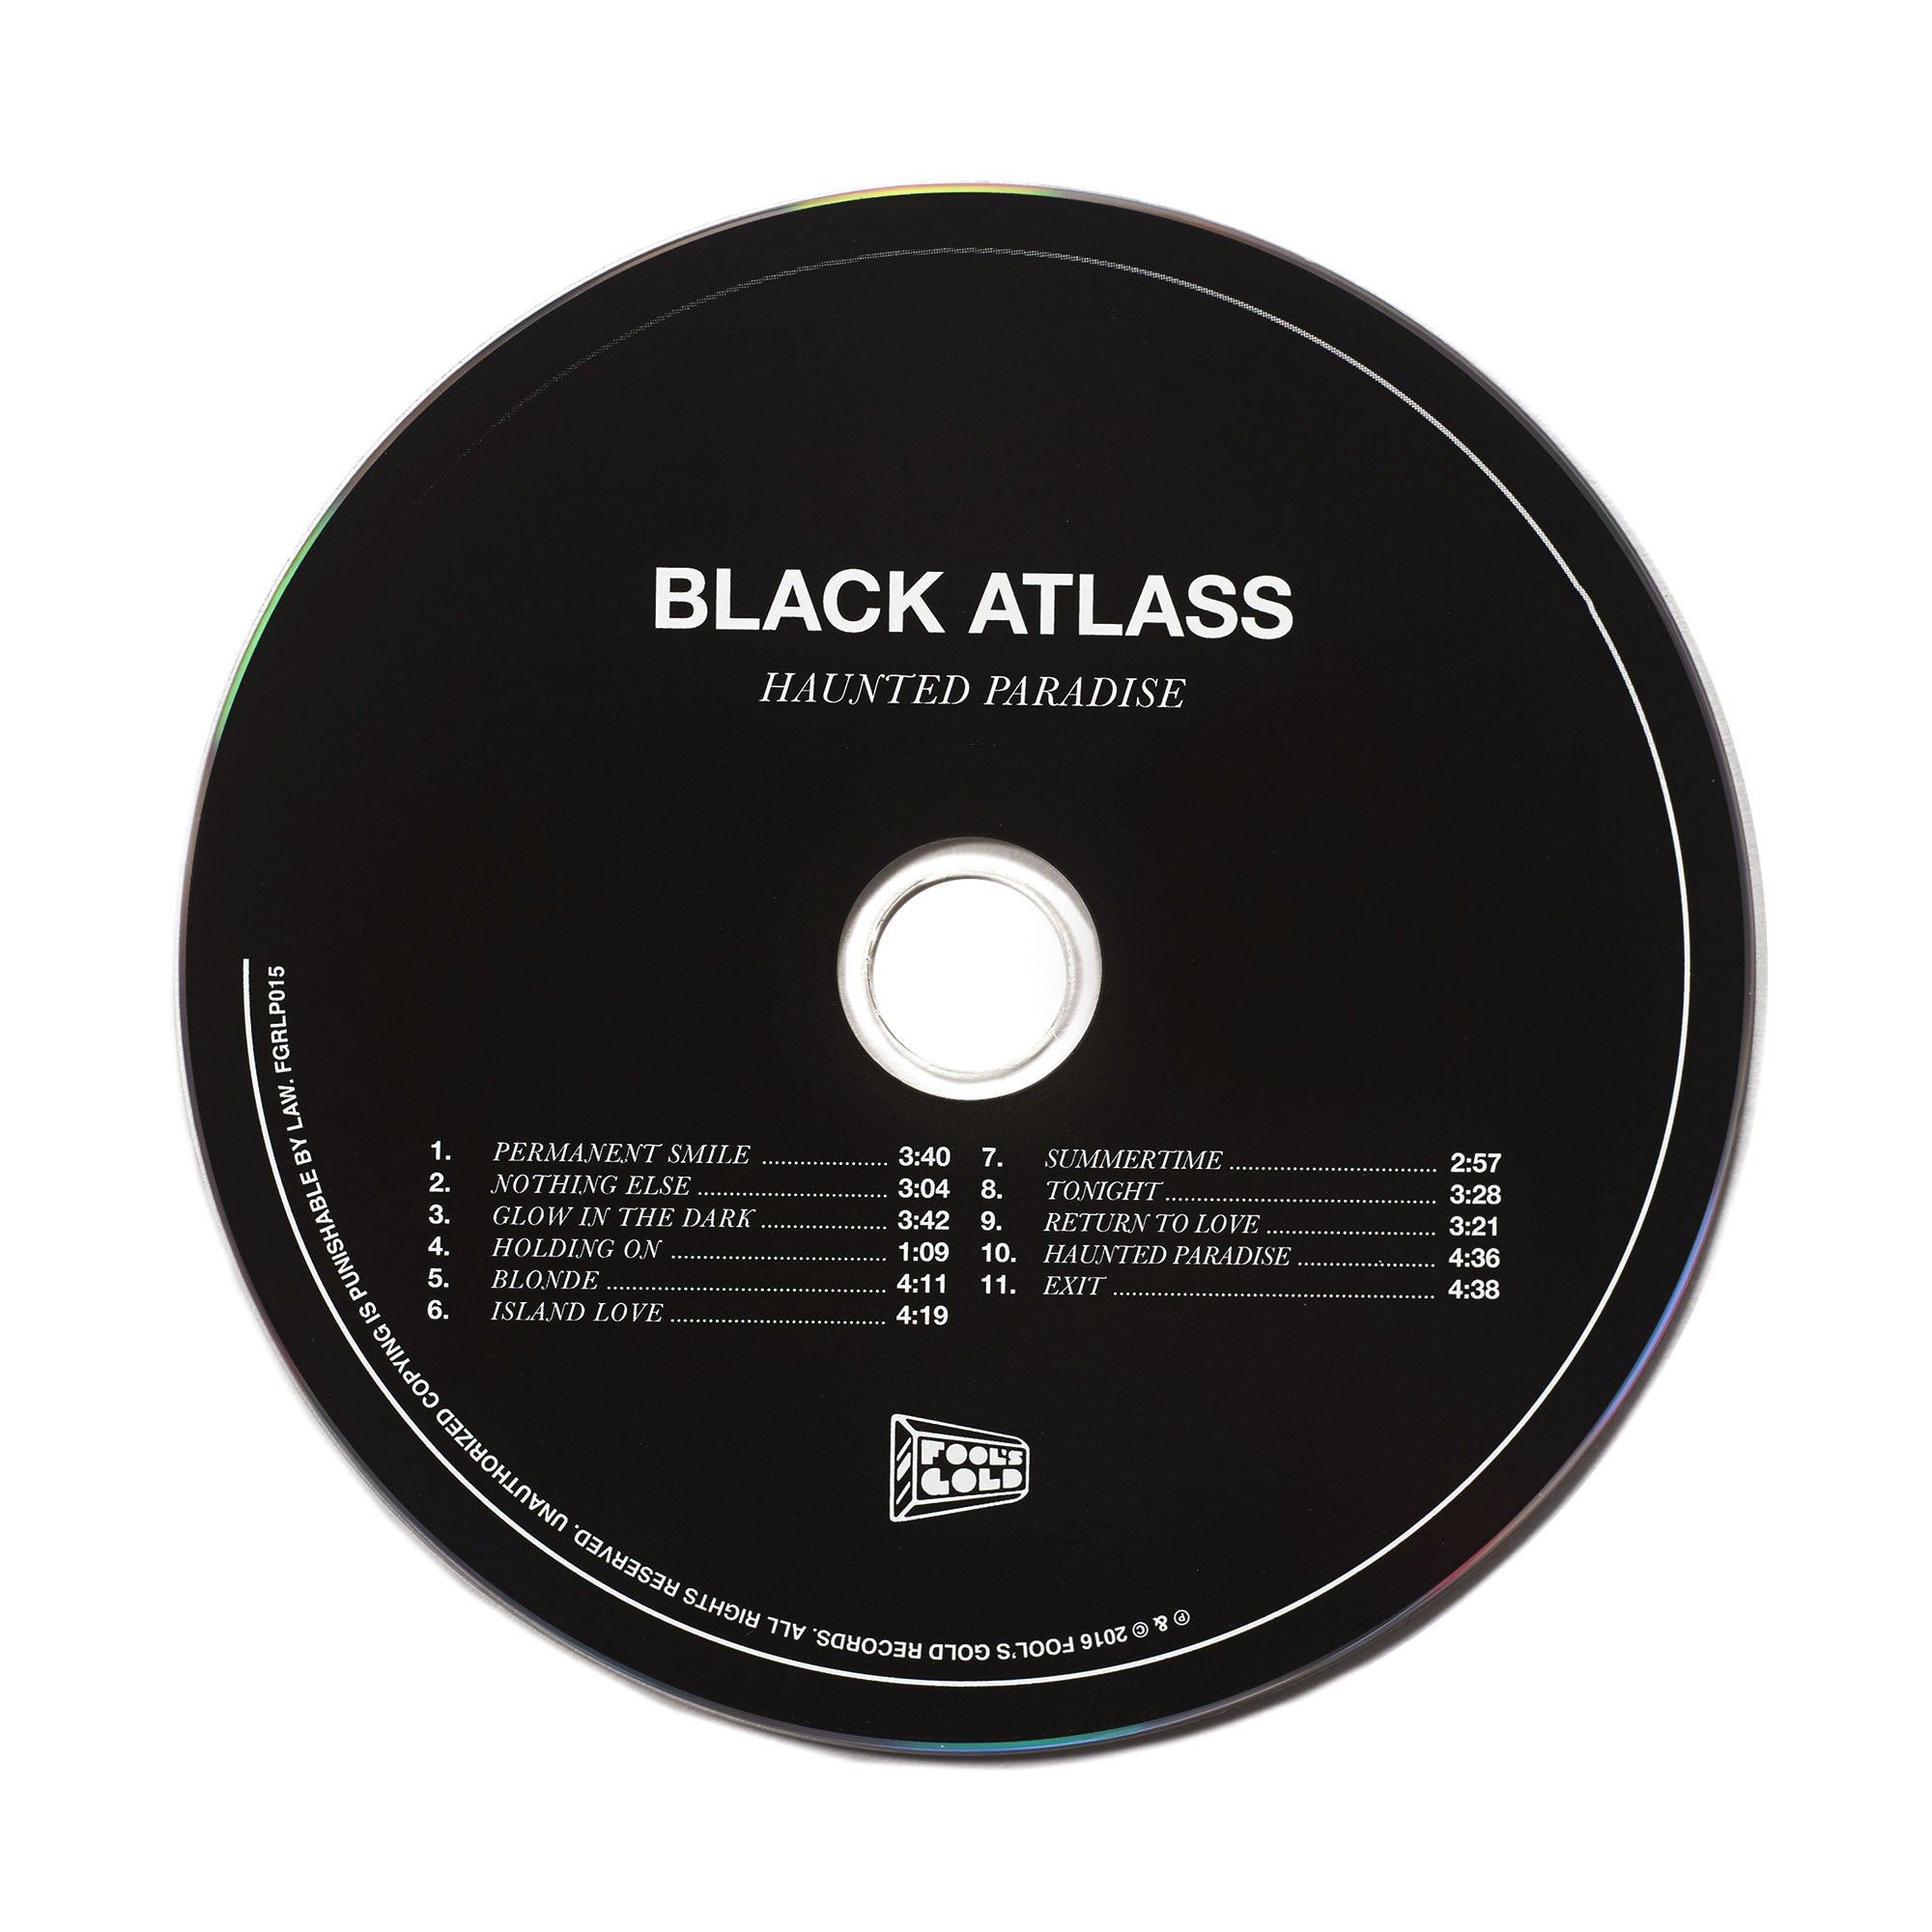 Black Atlass “Haunted Paradise” CD